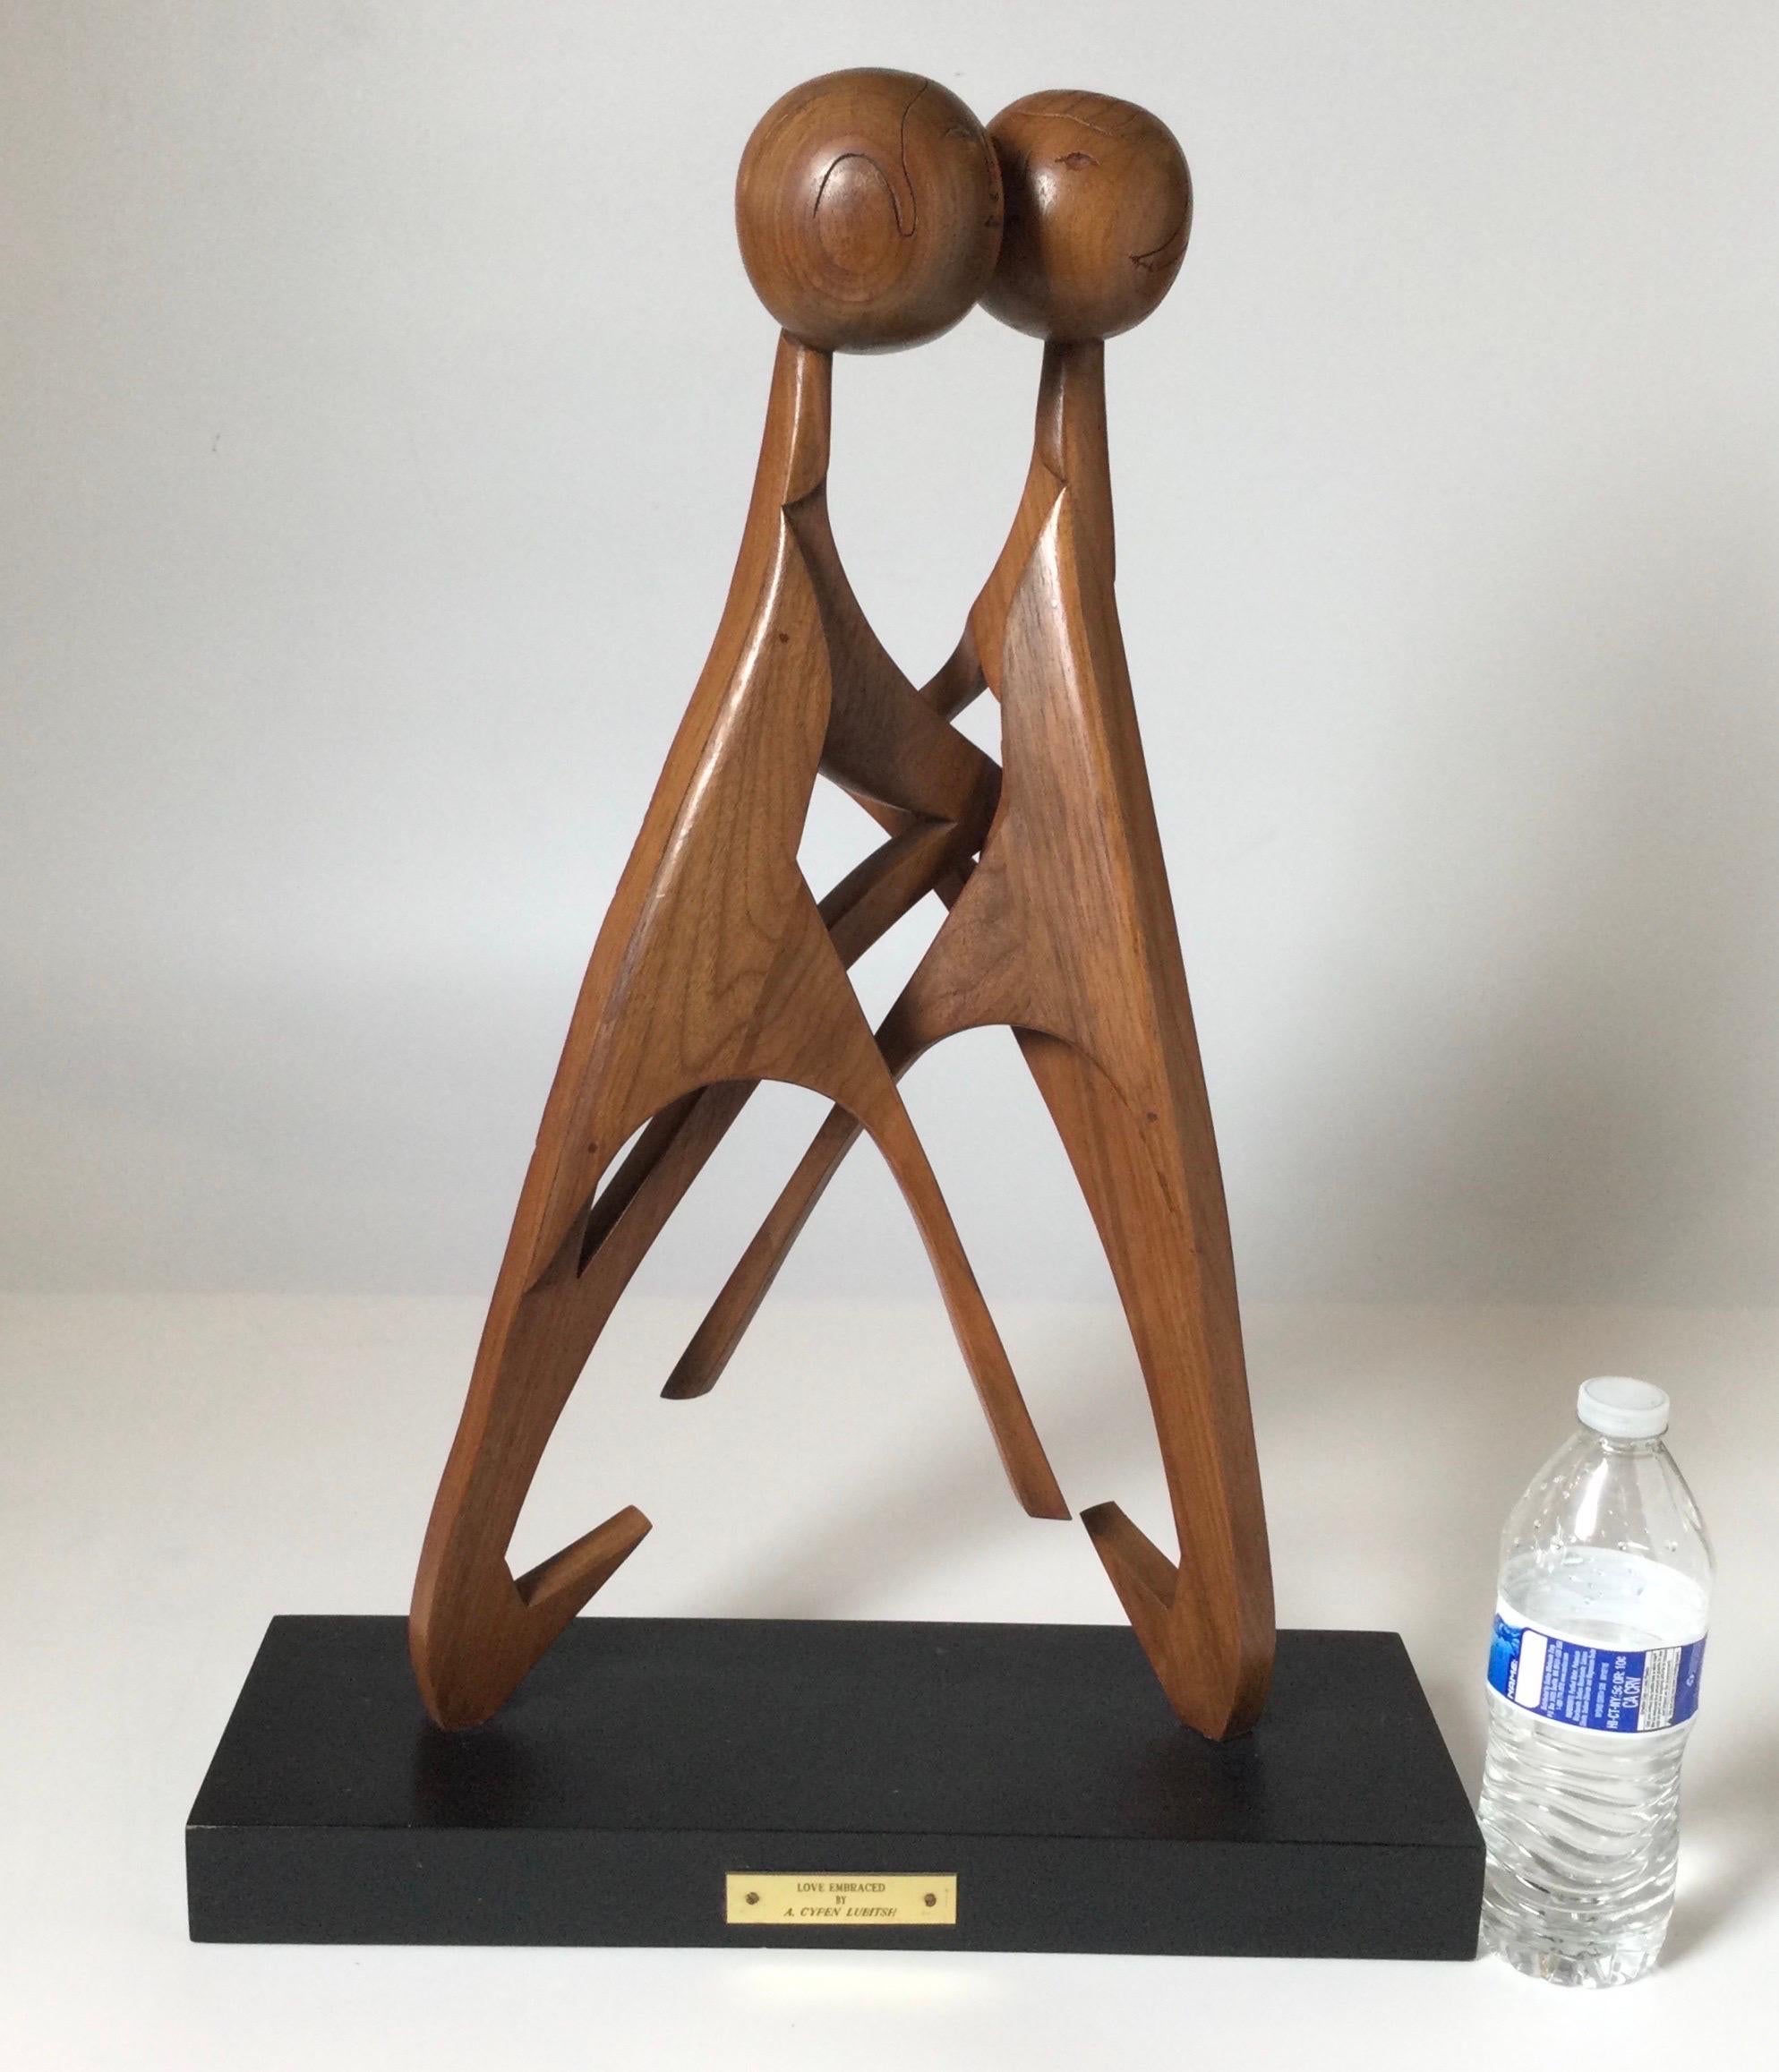 Teakholz-Skulptur „Love Embraced“ von A. Cypen Lubitsh auf ebonisiertem Holzsockel. Die 2 abstrakten Figuren, die sich umarmen, sind mit Schrauben am schwarzen Holzsockel befestigt, was die Bewegung der Figurenköpfen leicht beschleunigt. 

Cypen